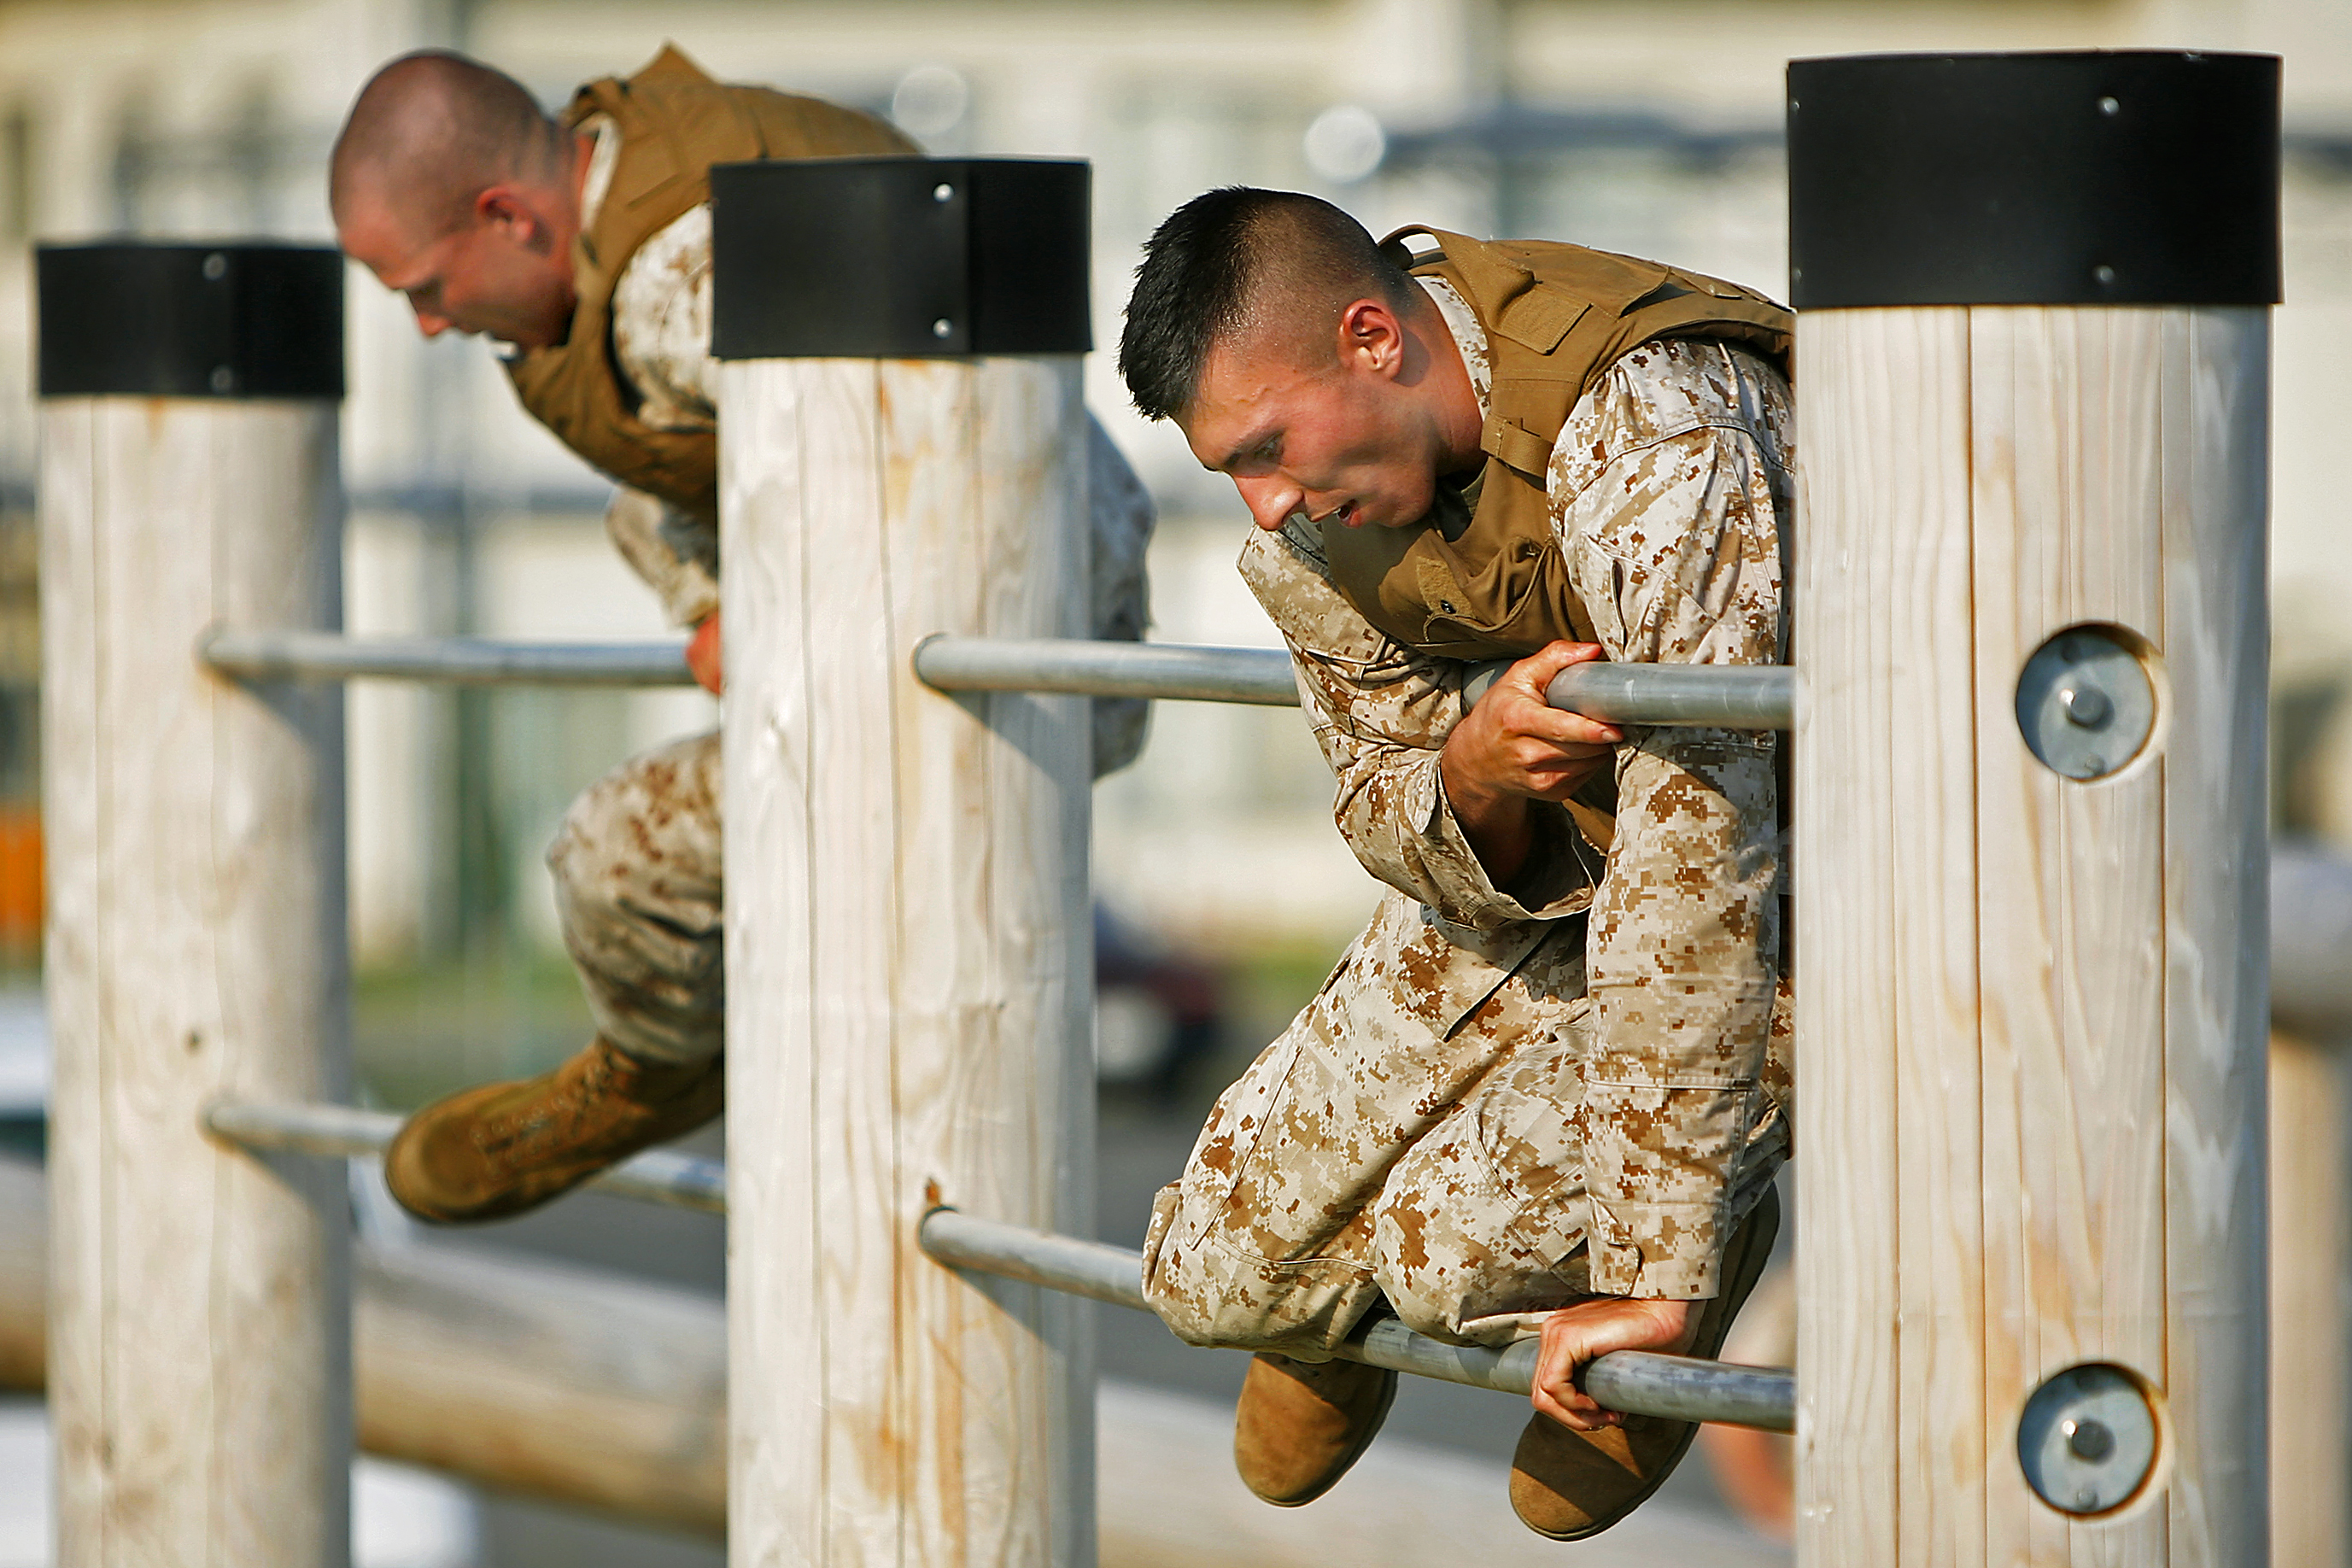 Армия смелая сильная. Военные занимаются спортом. Мужественные и сильные. Мужчина в военной форме занимается спортом. Как тренируют военное дело.